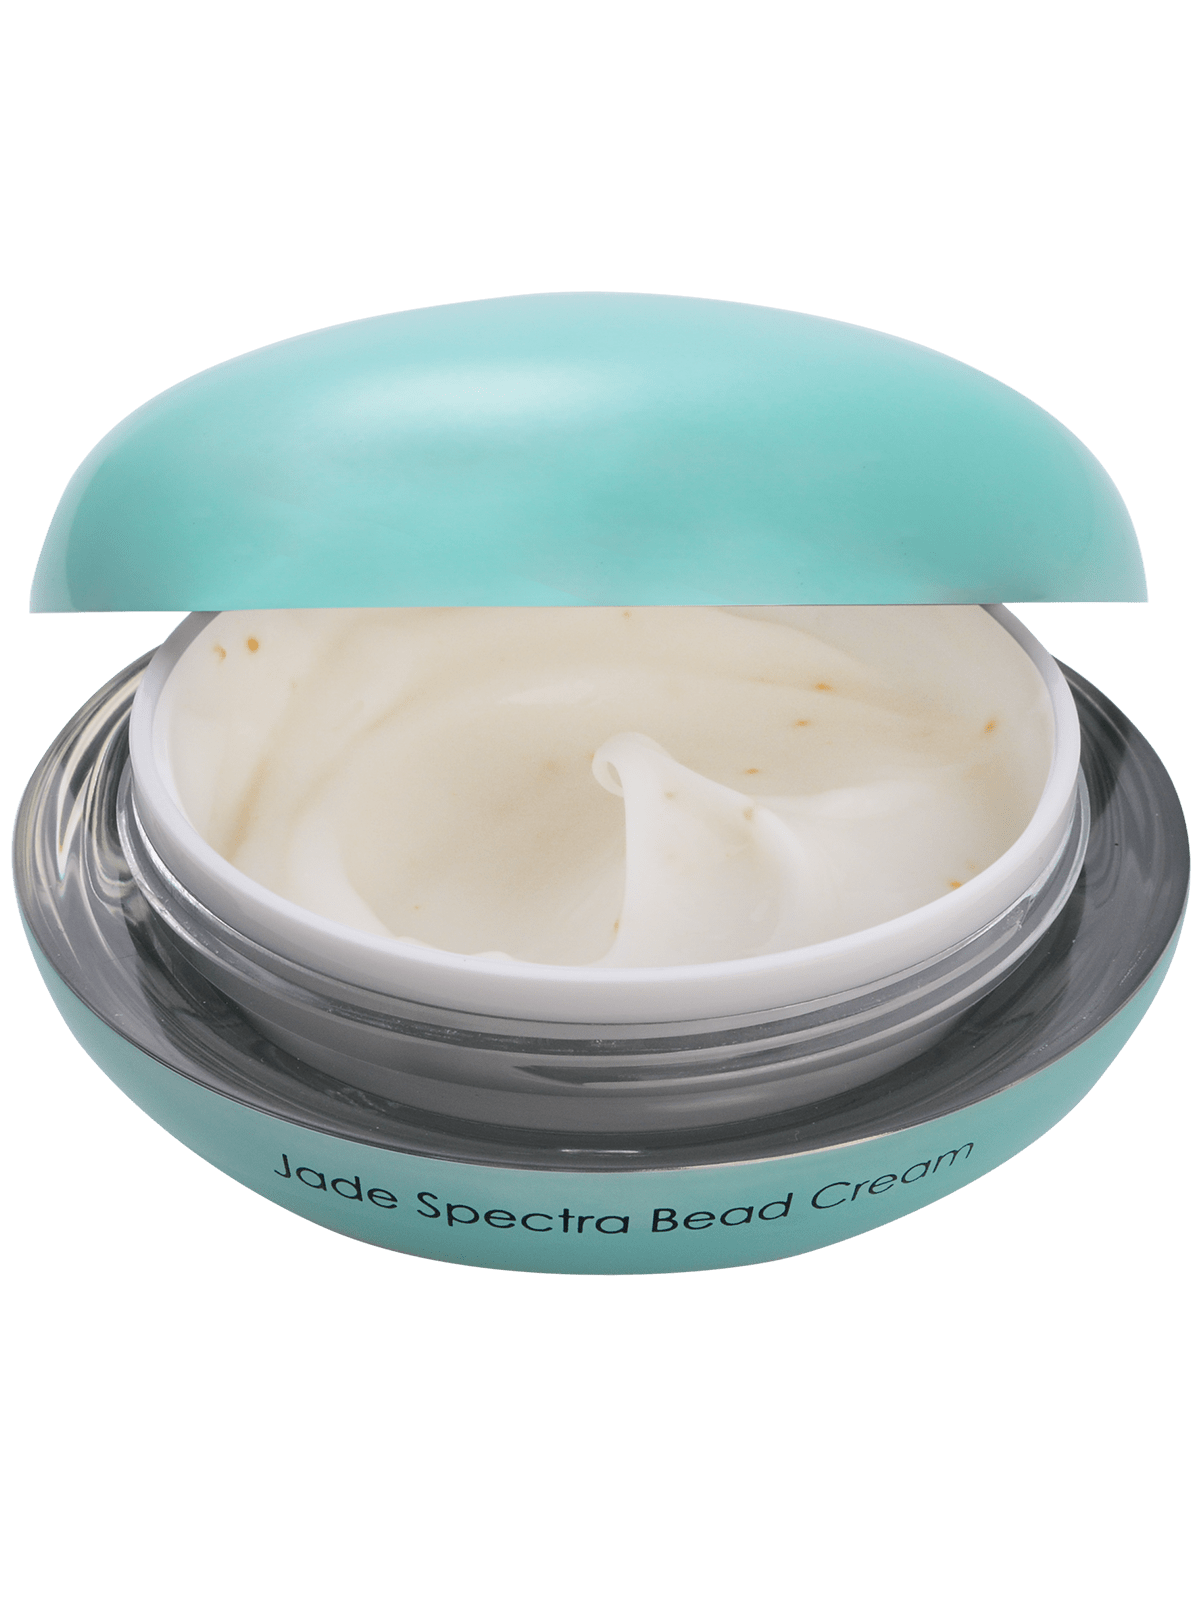 Jade Spectra Bead Cream open lid